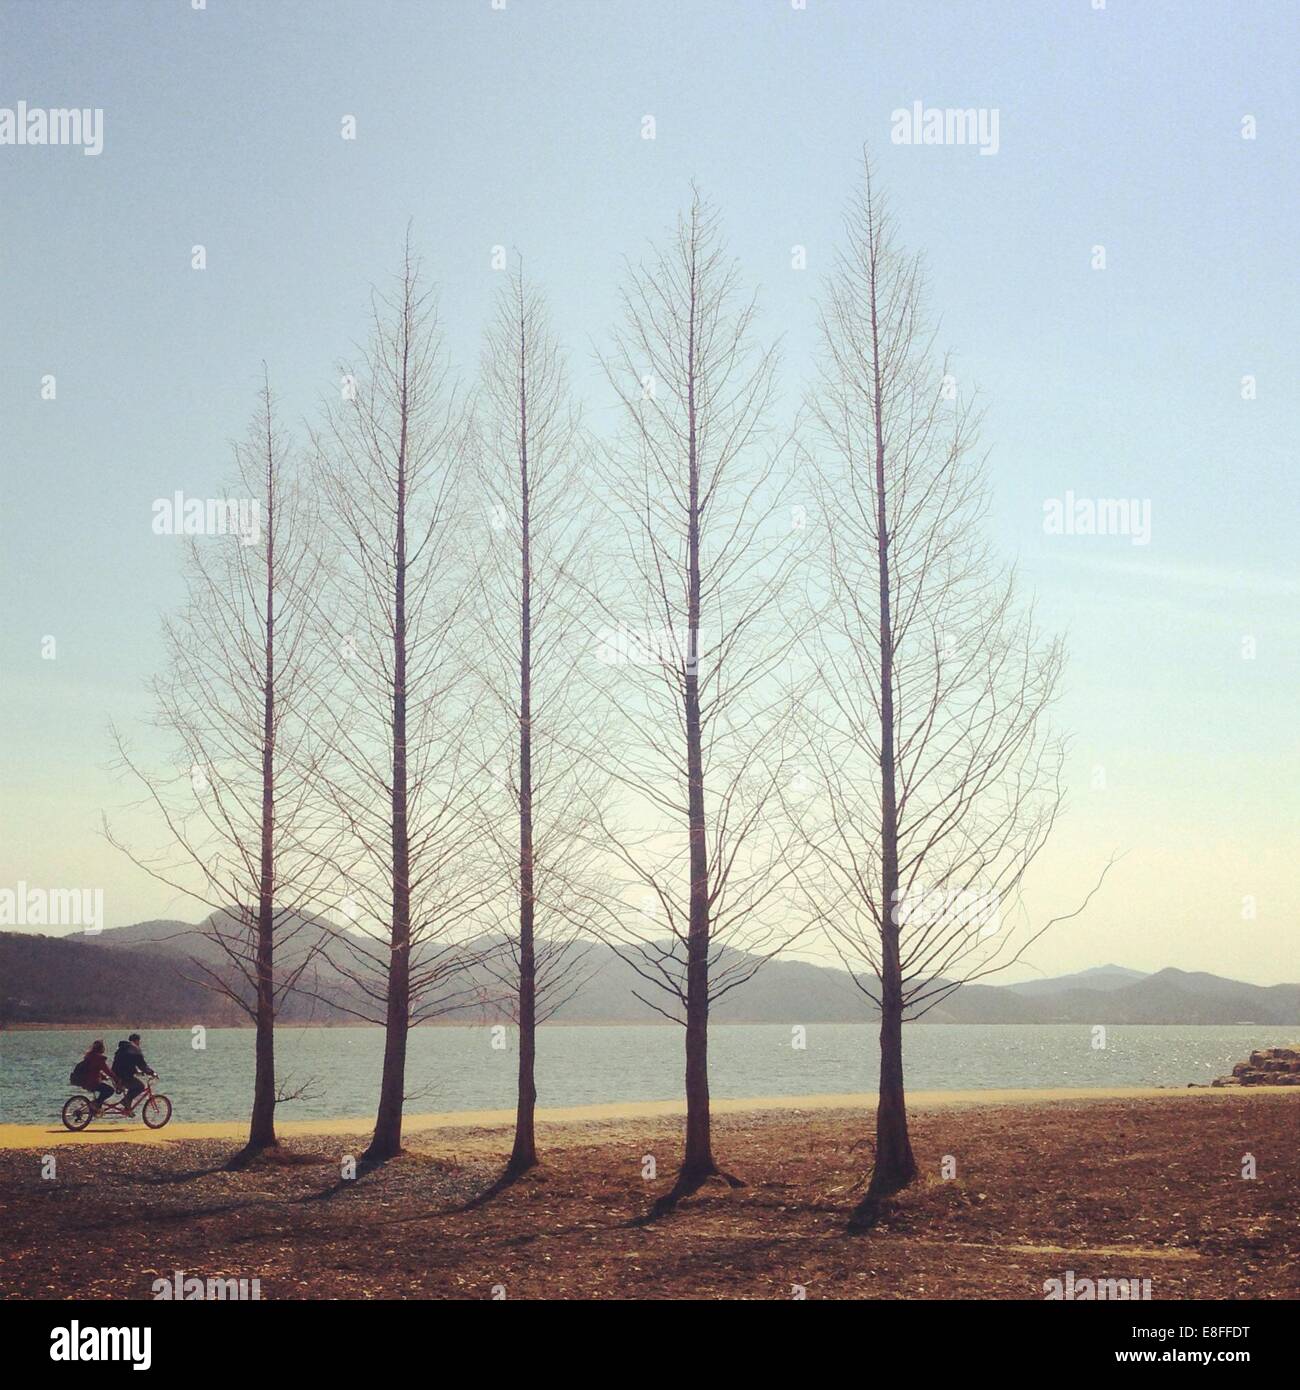 Pareja en bicicleta pasando por una hilera de árboles, Corea del Sur Foto de stock